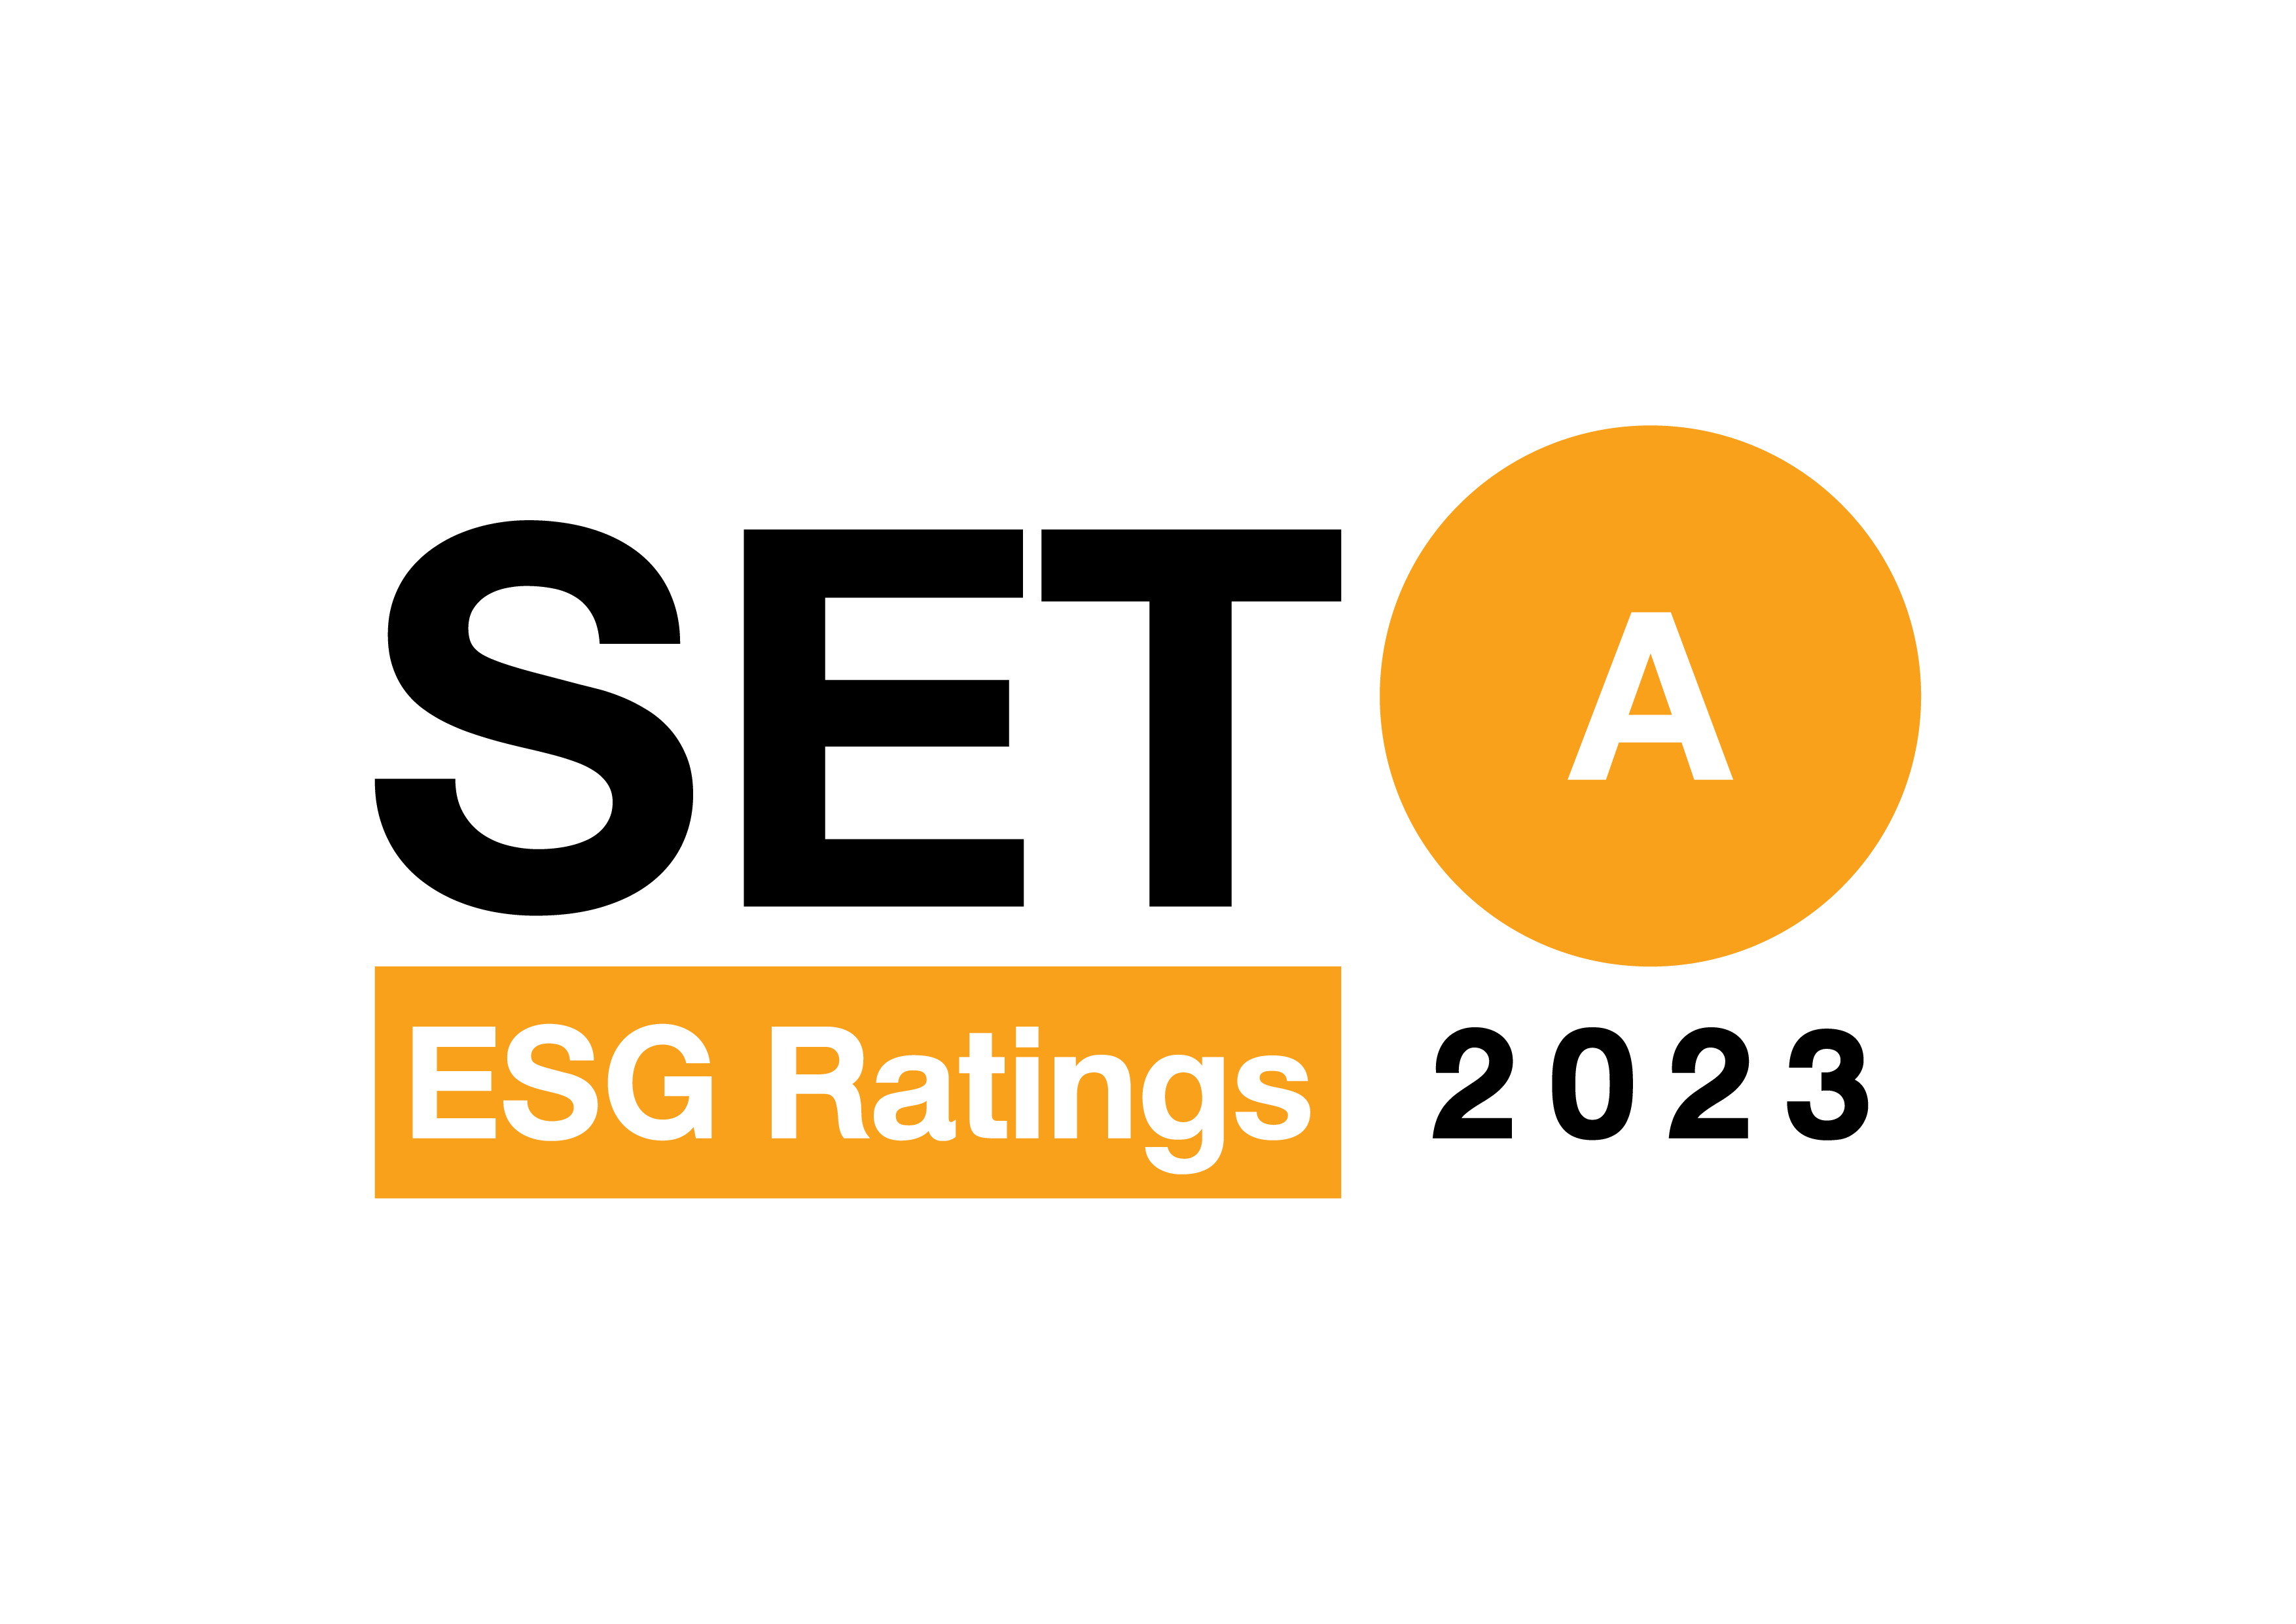 SET ESG Ratings